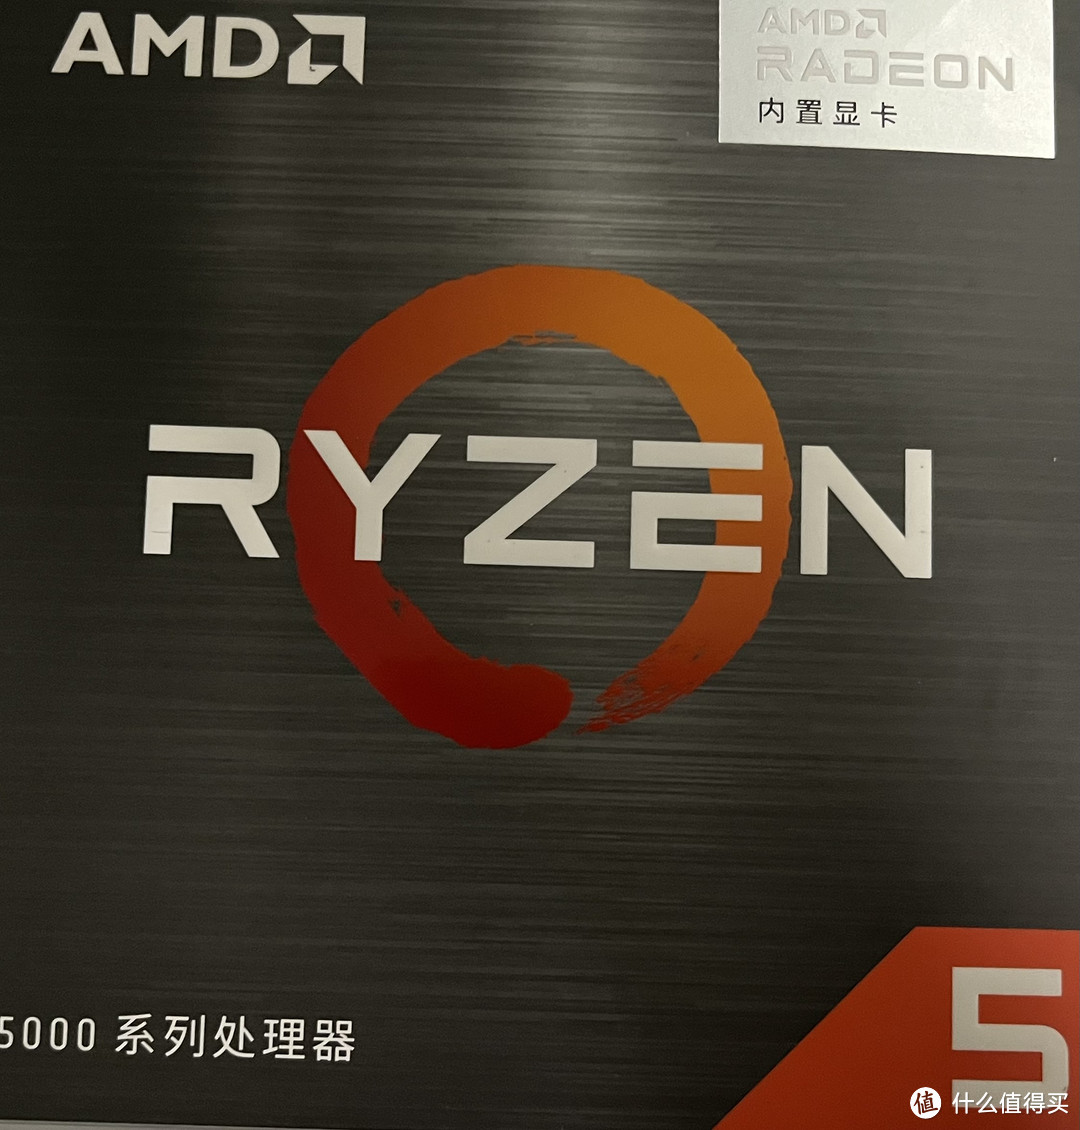 一起来聊聊这款﻿AMD的CPU吧